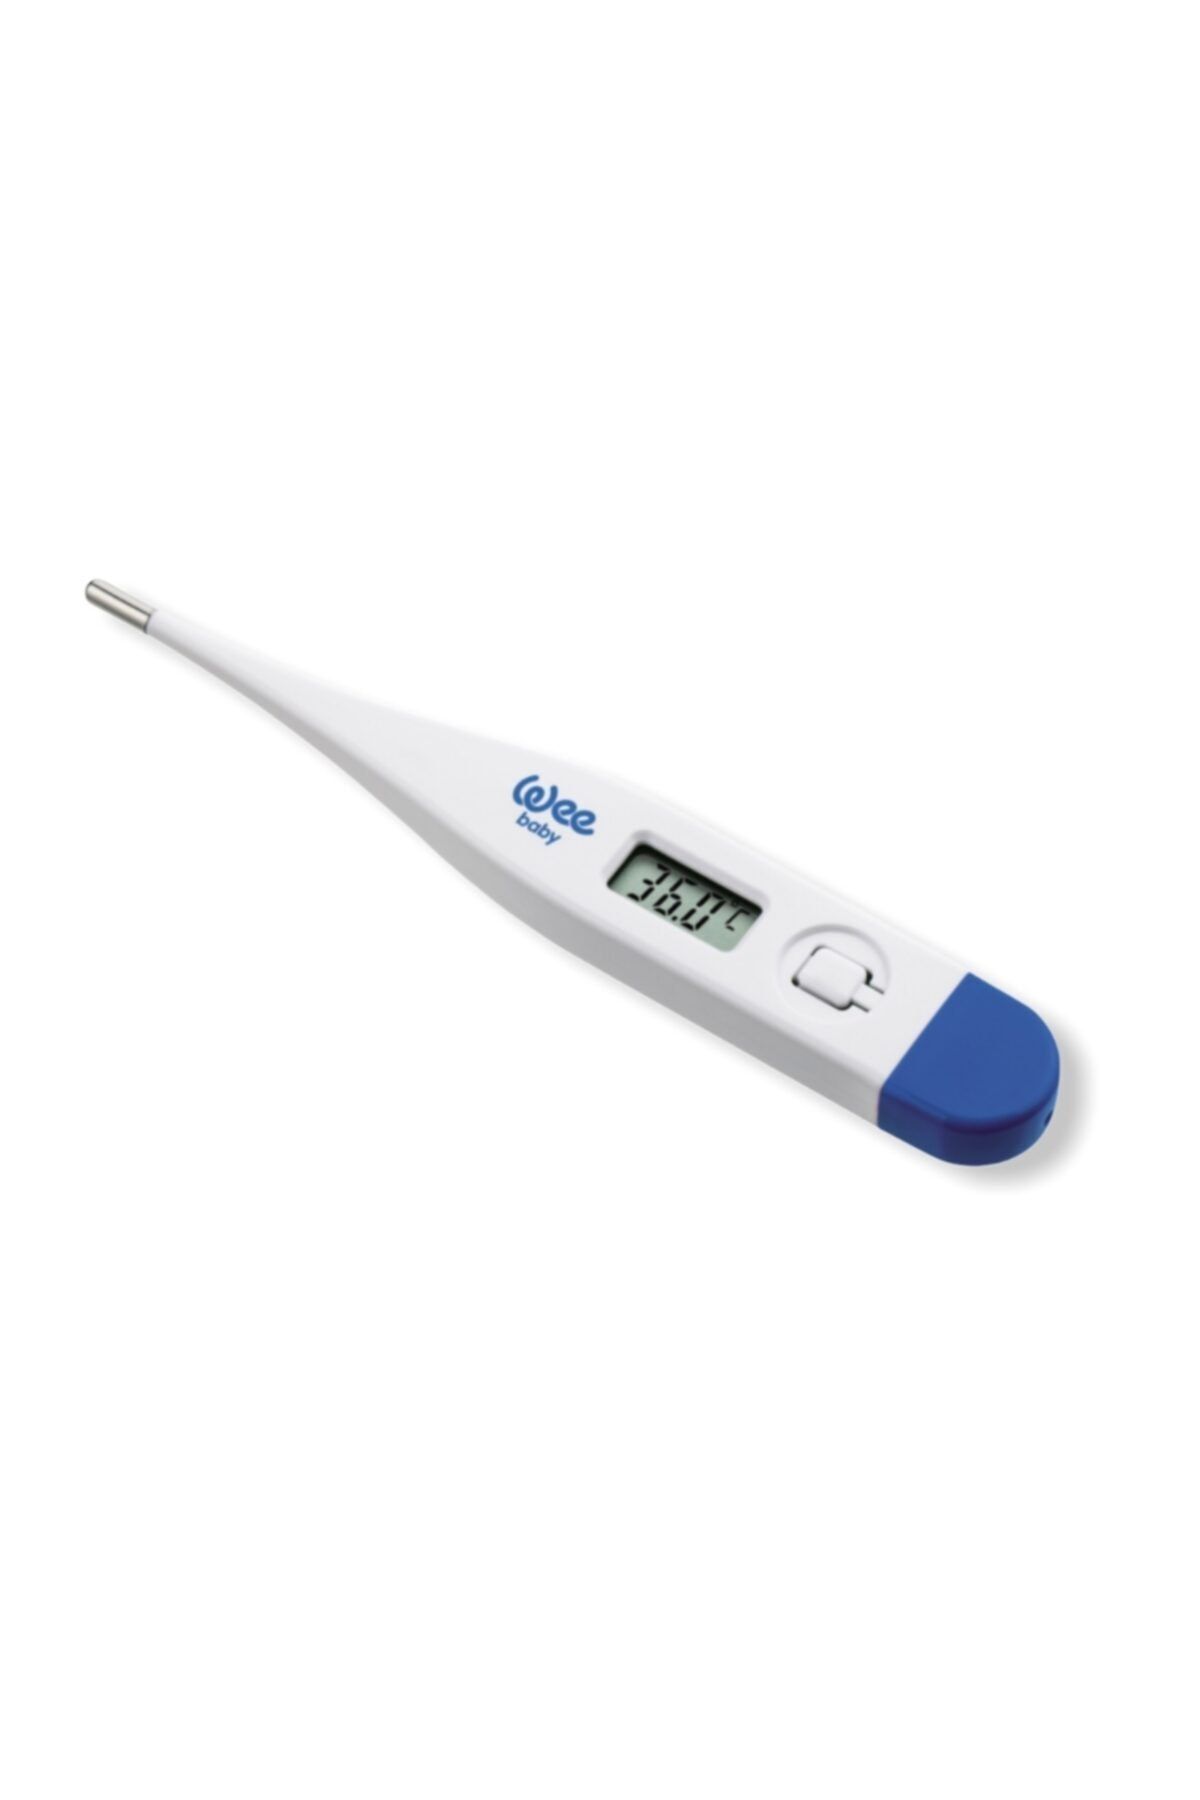 Wee Baby Dijital Termometre ATŞÖLÇER11